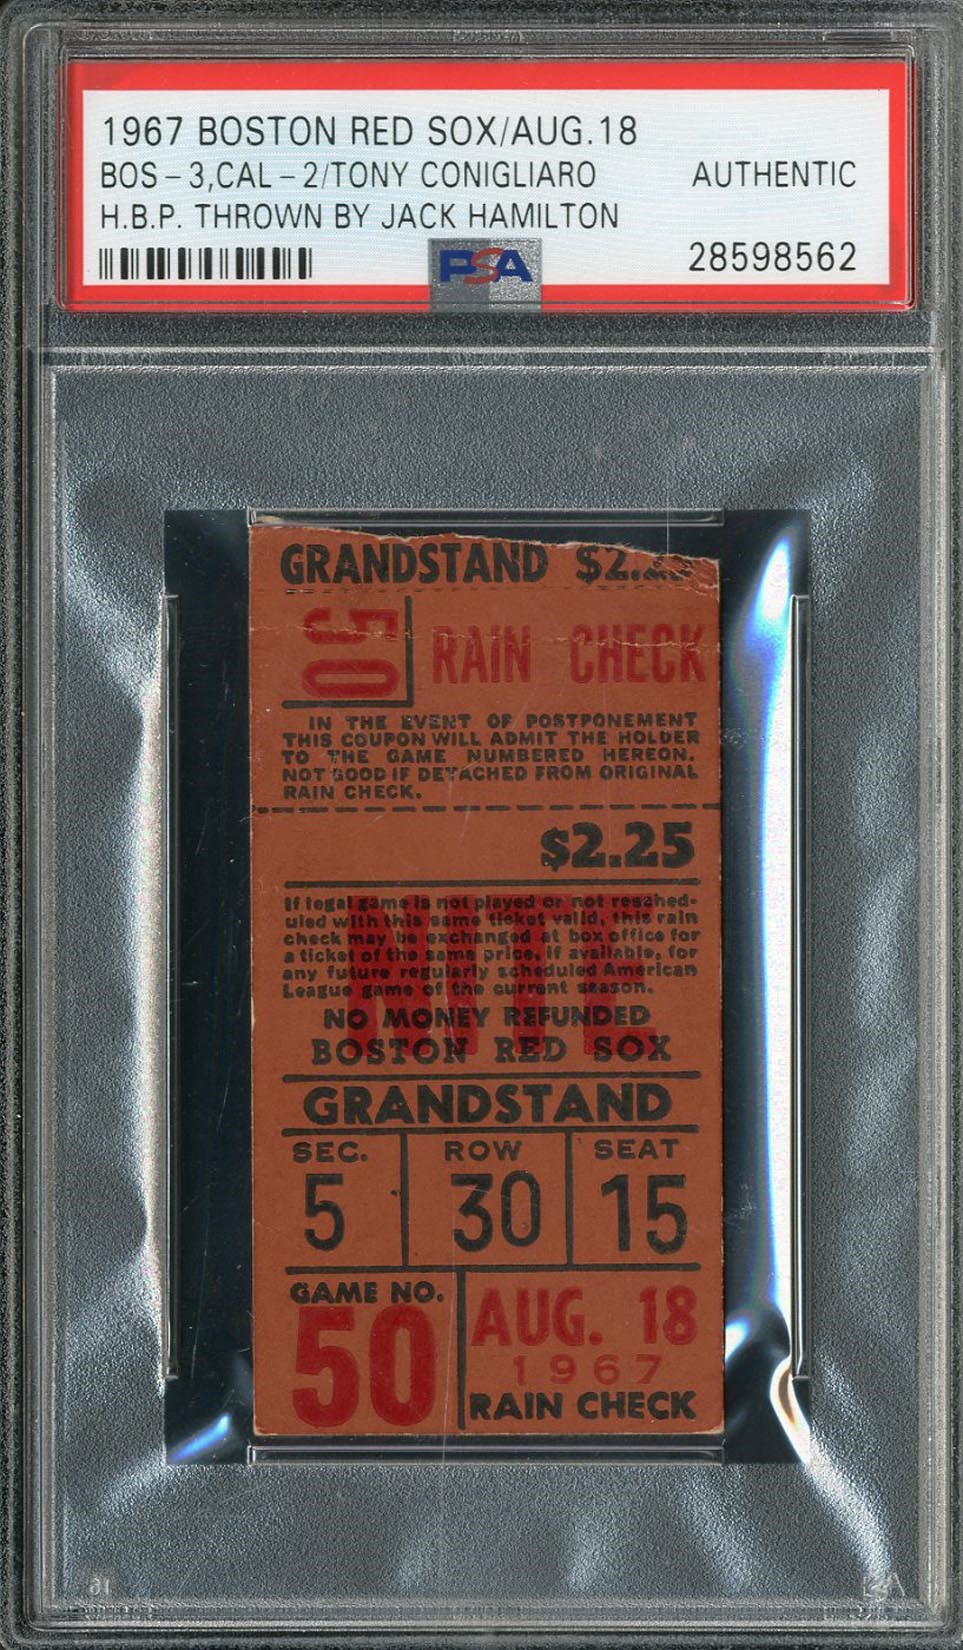 Baseball Memorabilia - Infamous 1967 Tony Conigliaro Beaning Ticket (PSA)